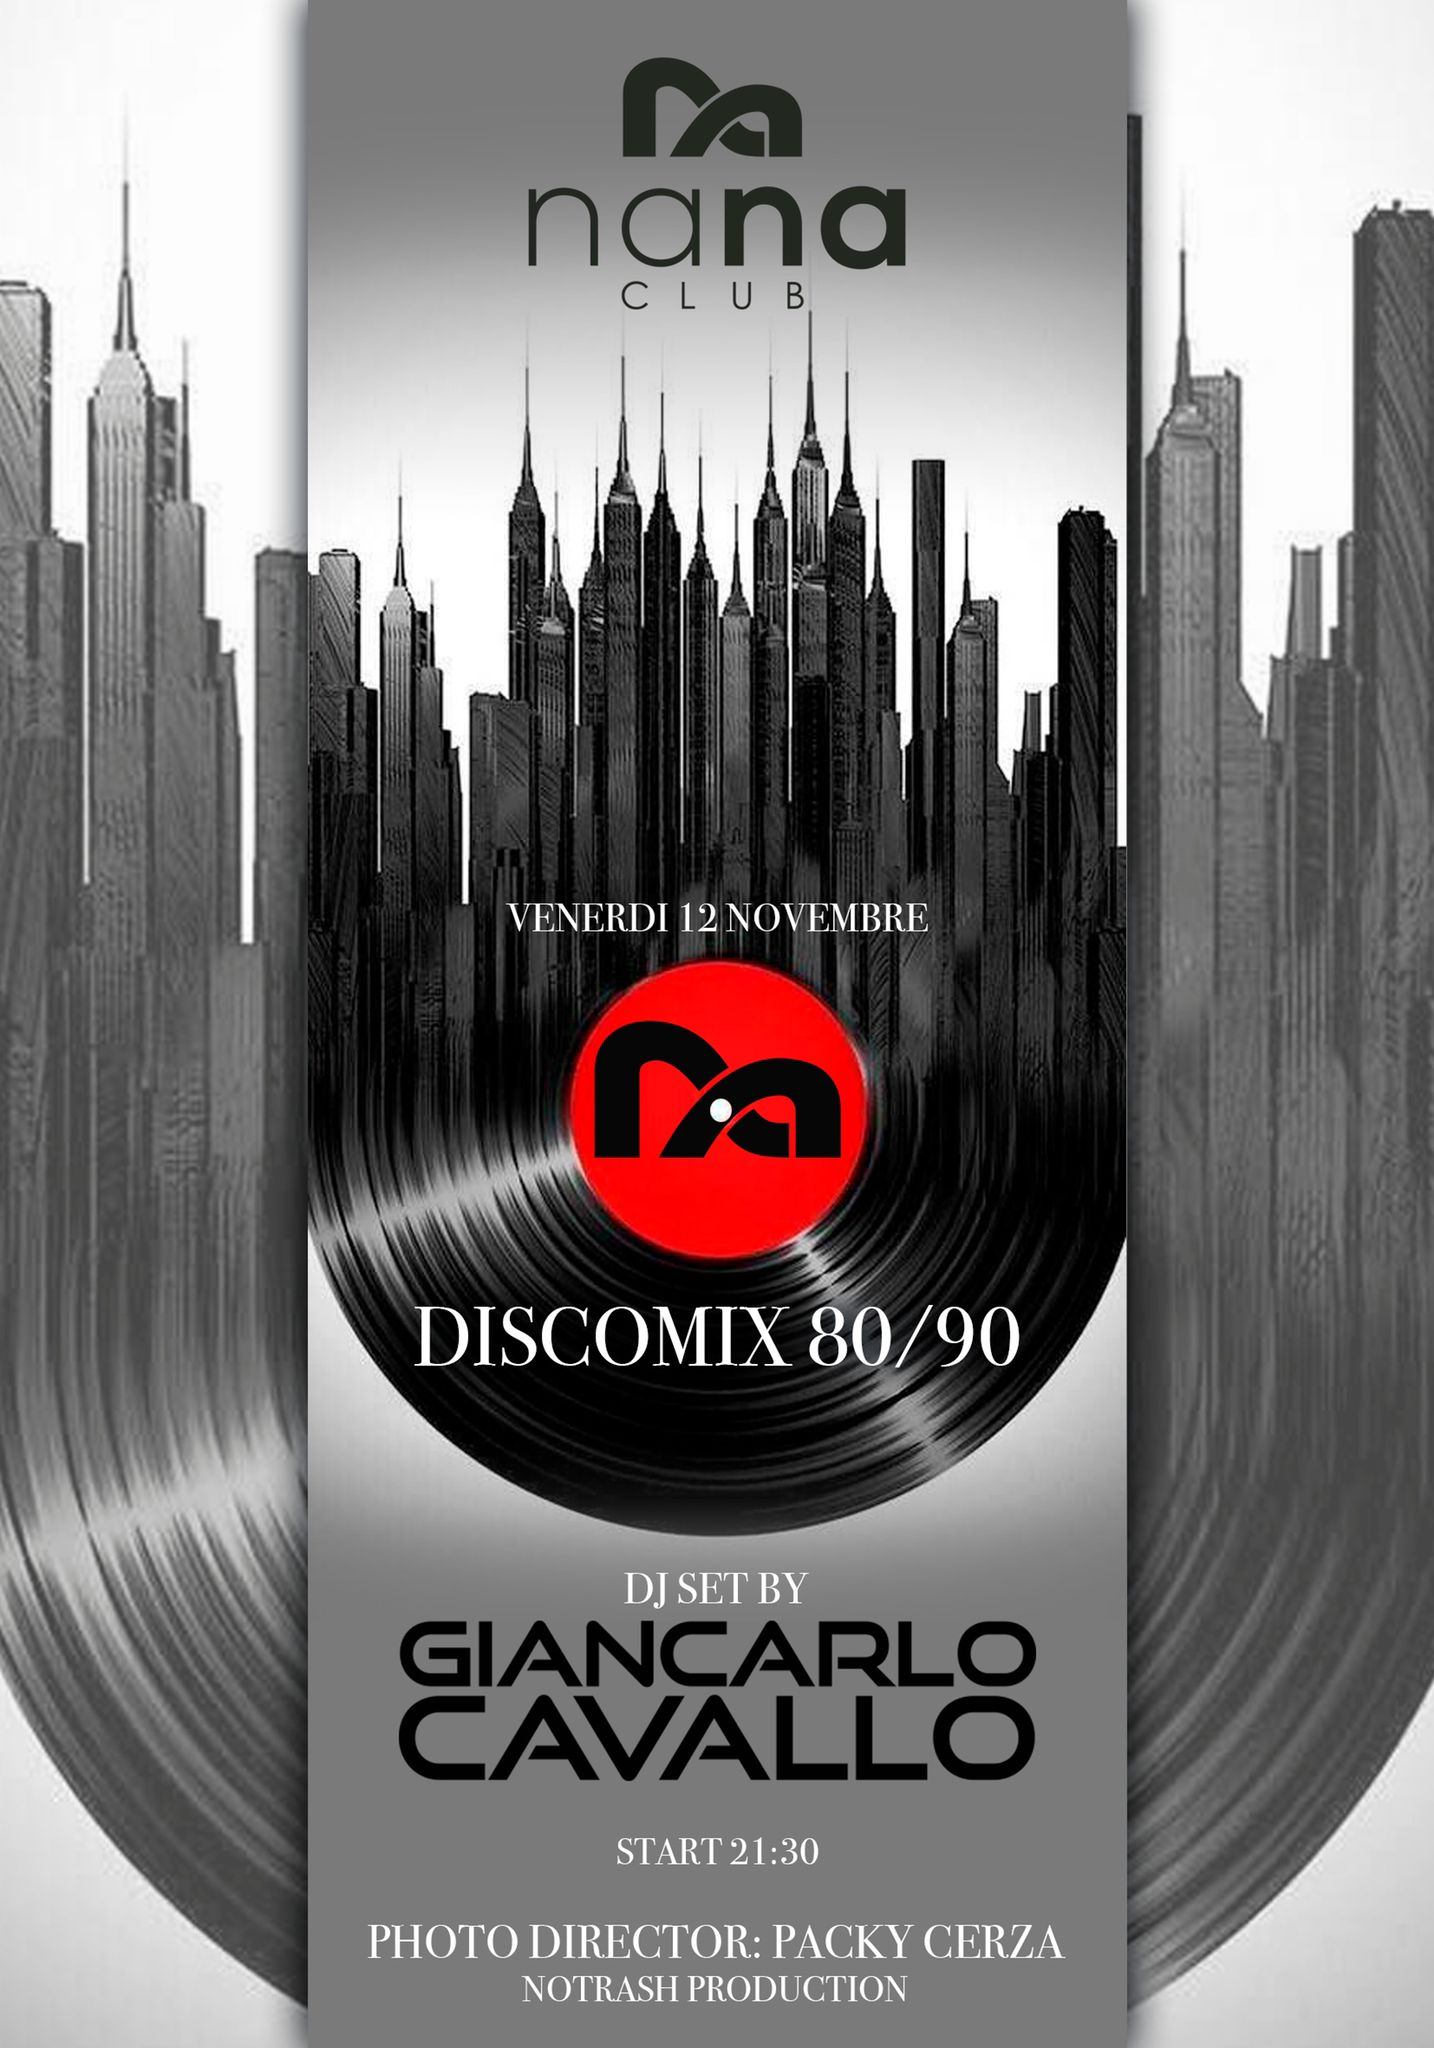 E’ tutto pronto per la seconda edizione Discomix anni ’80/’90 Vinyl Show al NaNa Club